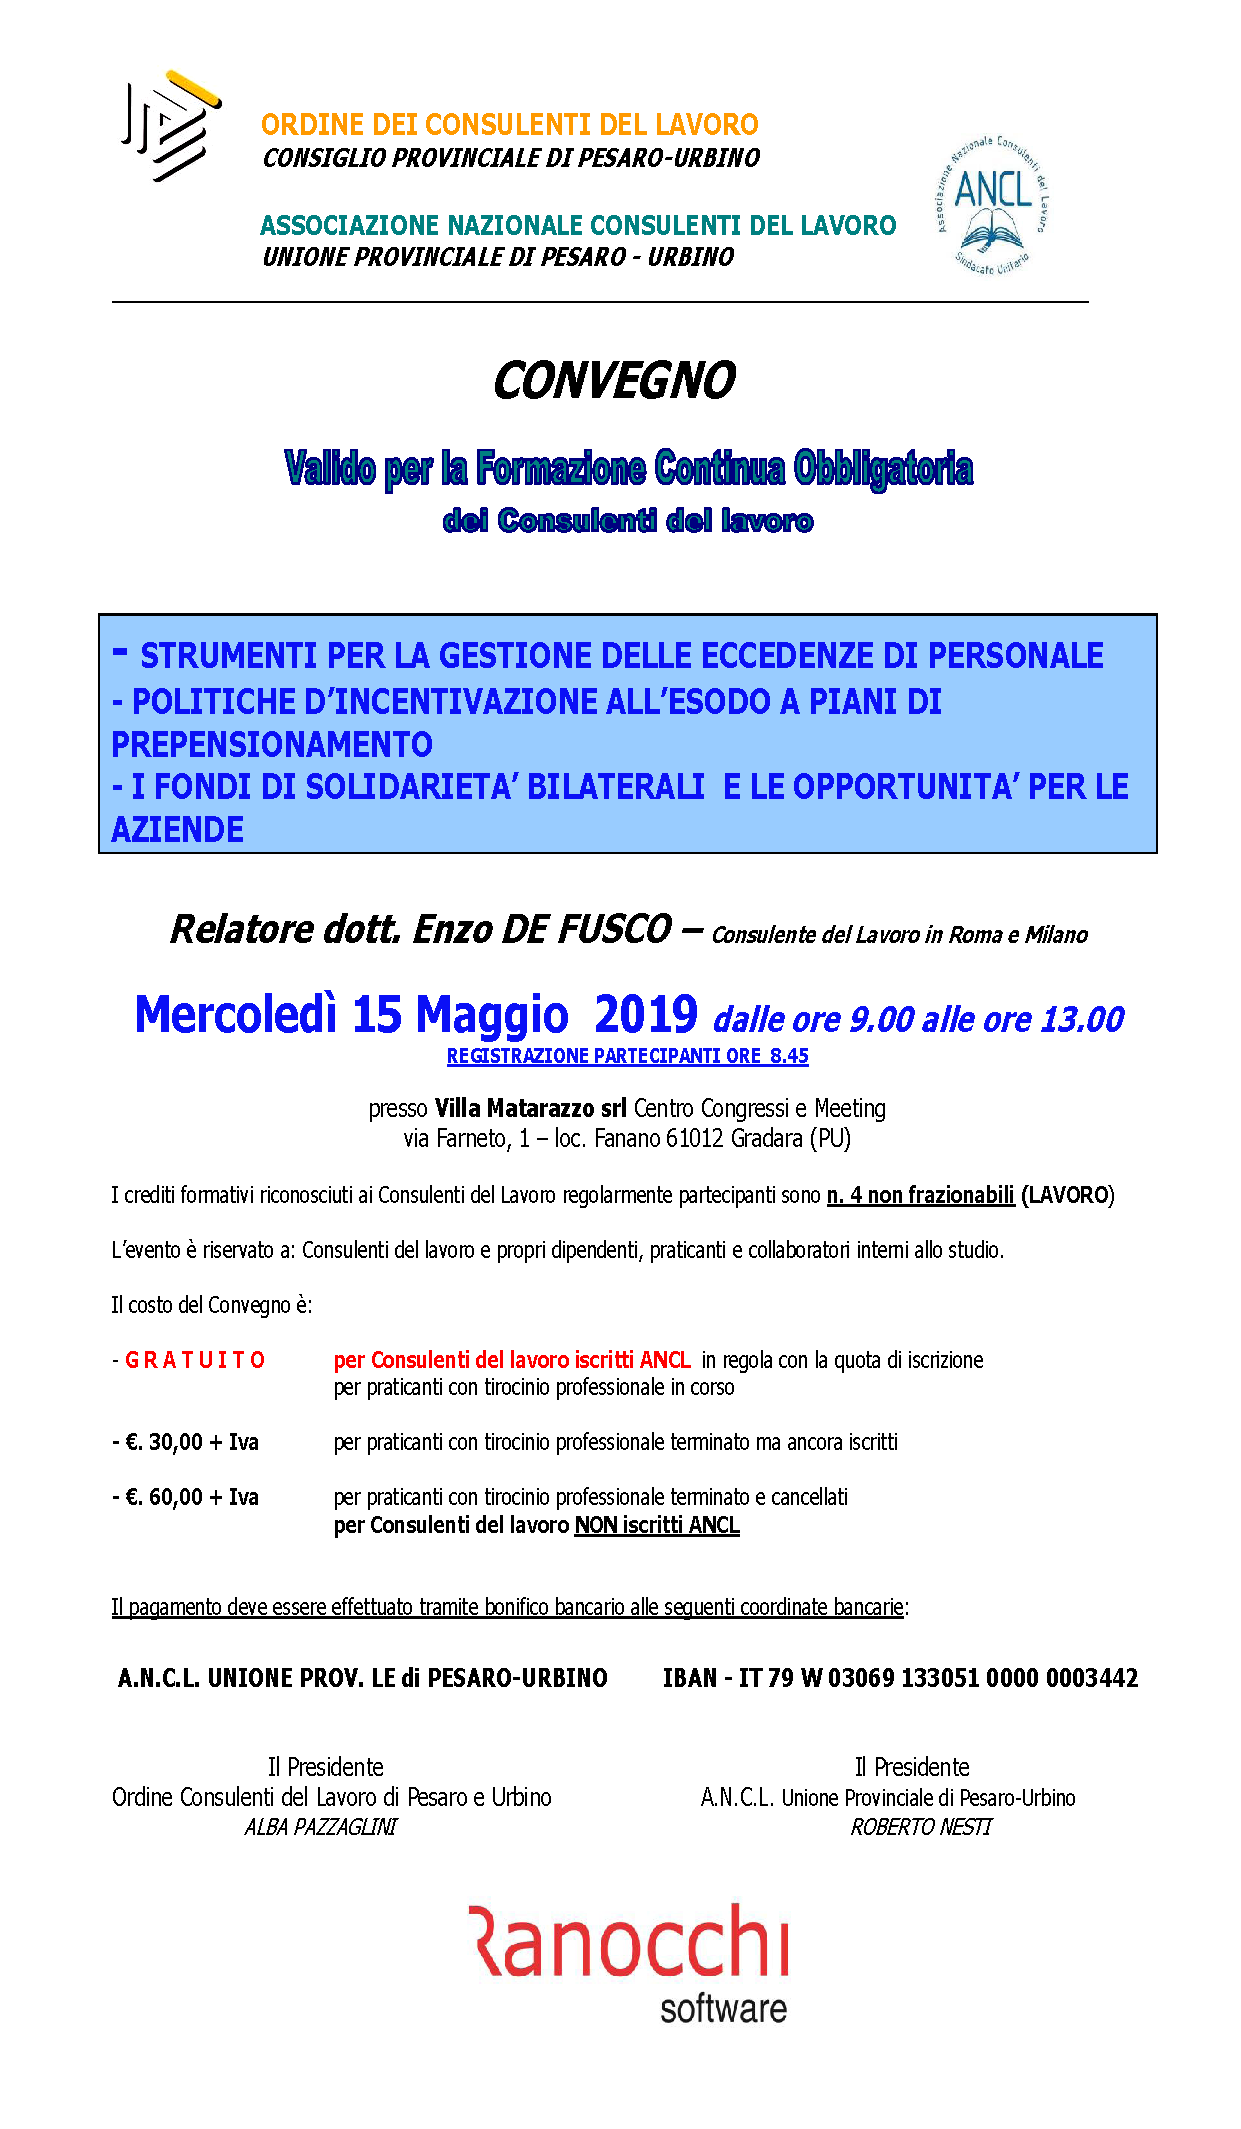 Convegno valido per la Formazione Continua Obbligatoria dei Consulenti del Lavoro il 15 maggio 2019 presso Villa Matarazzo a Gradara